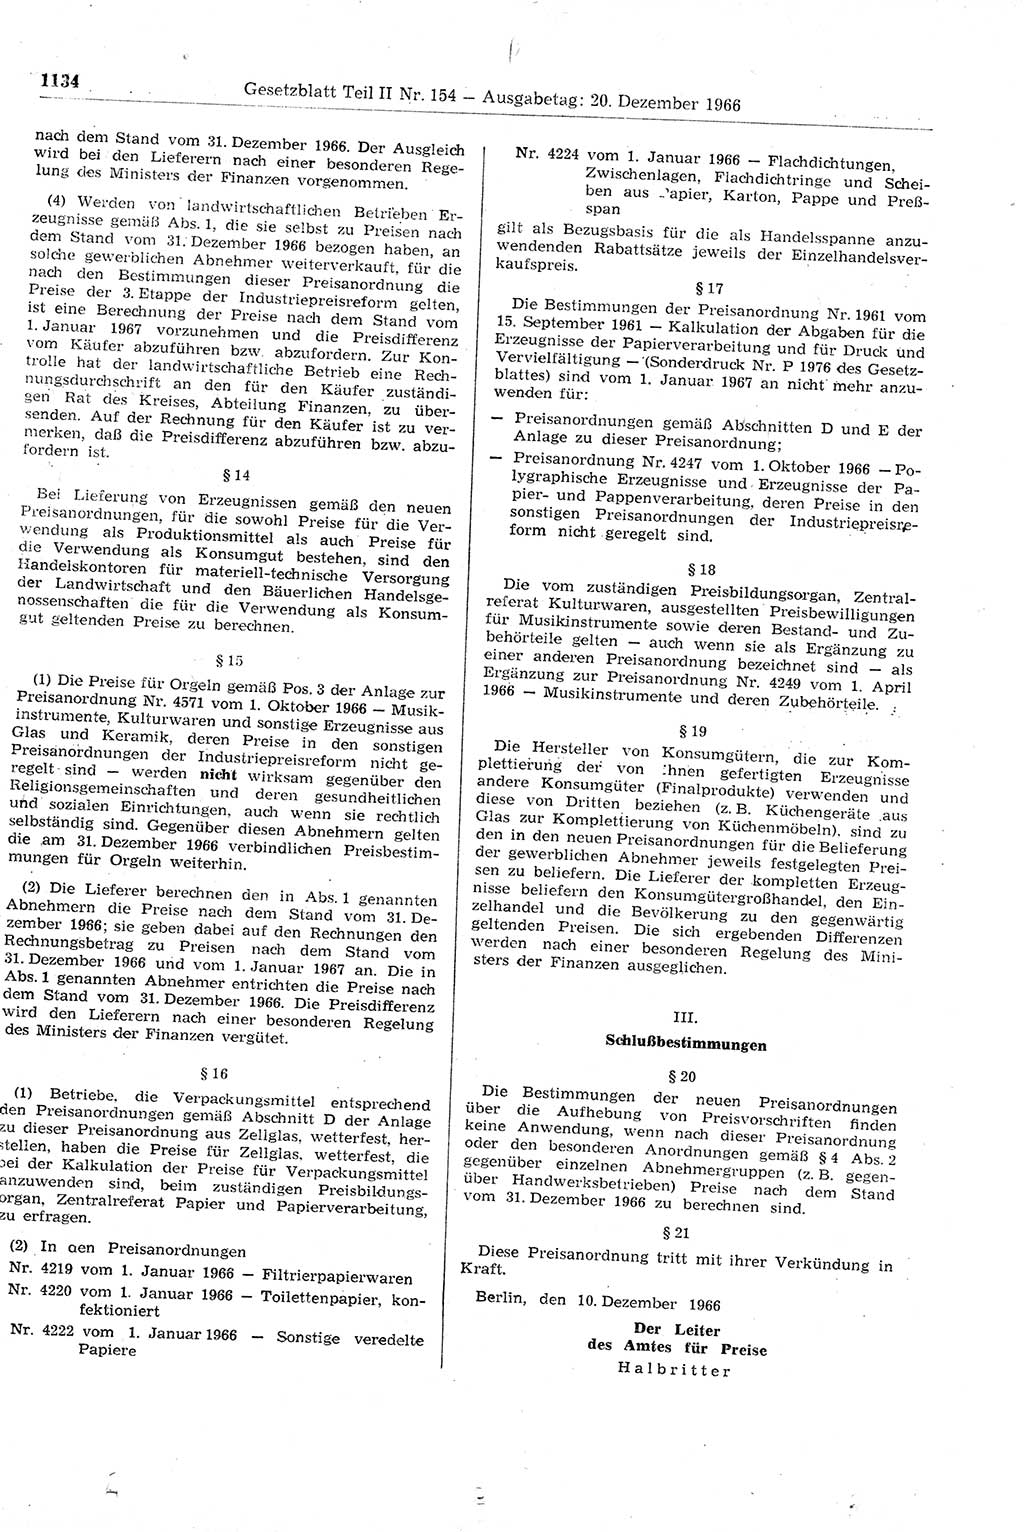 Gesetzblatt (GBl.) der Deutschen Demokratischen Republik (DDR) Teil ⅠⅠ 1966, Seite 1134 (GBl. DDR ⅠⅠ 1966, S. 1134)